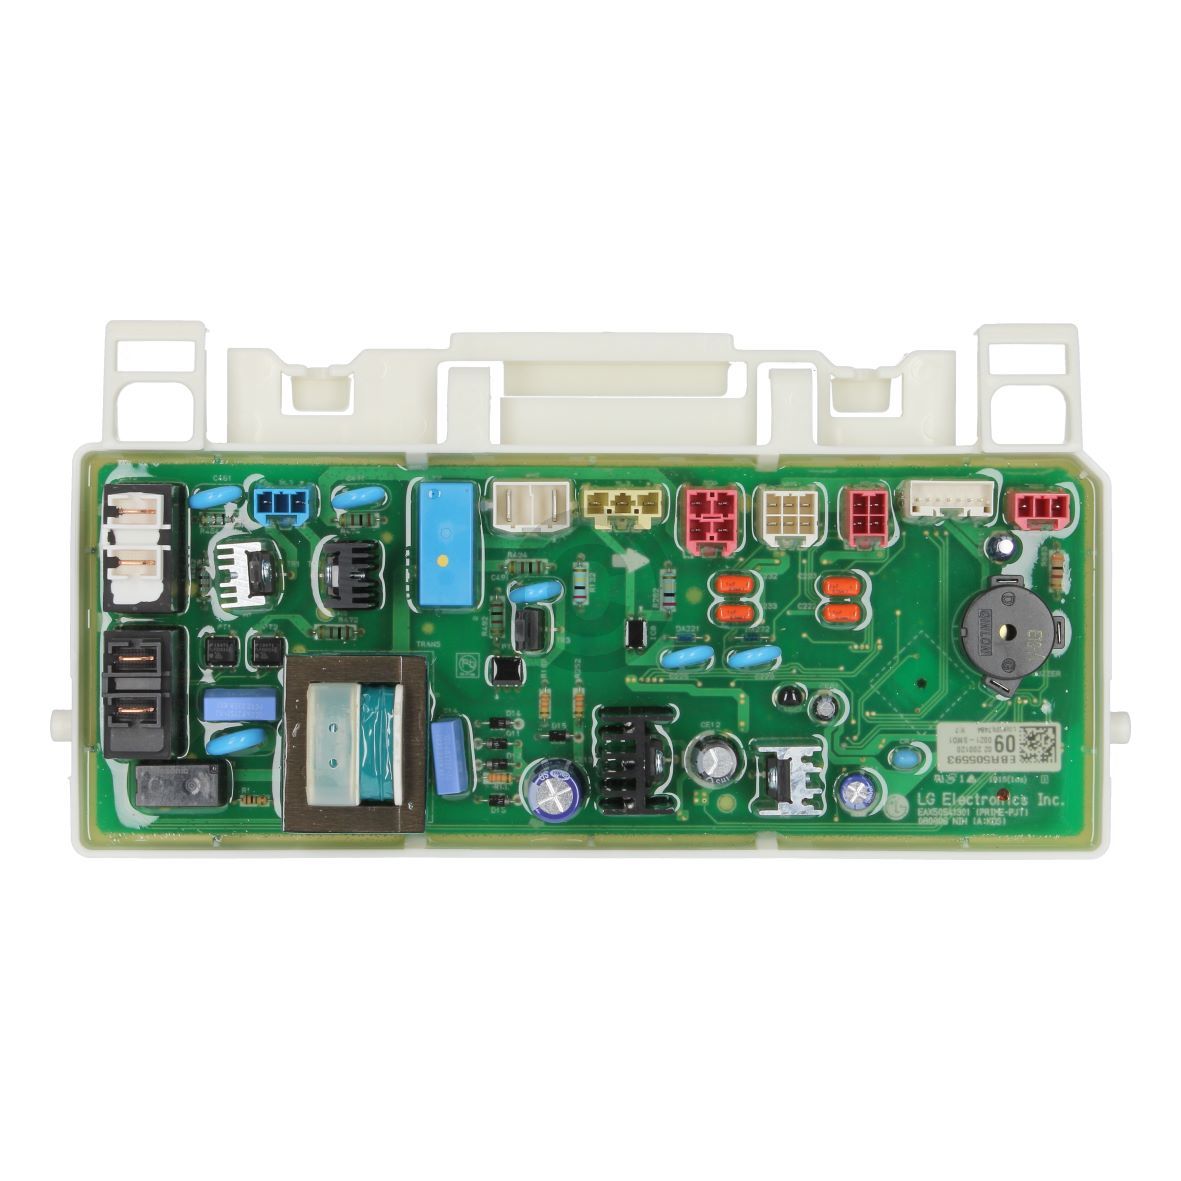 Elektronik LG Electronics  für Trockner (KD-EBR50559309) unter Waschen und Trocknen/Trockner/Steuerung und Bedienung/Elektronik und Steuerung